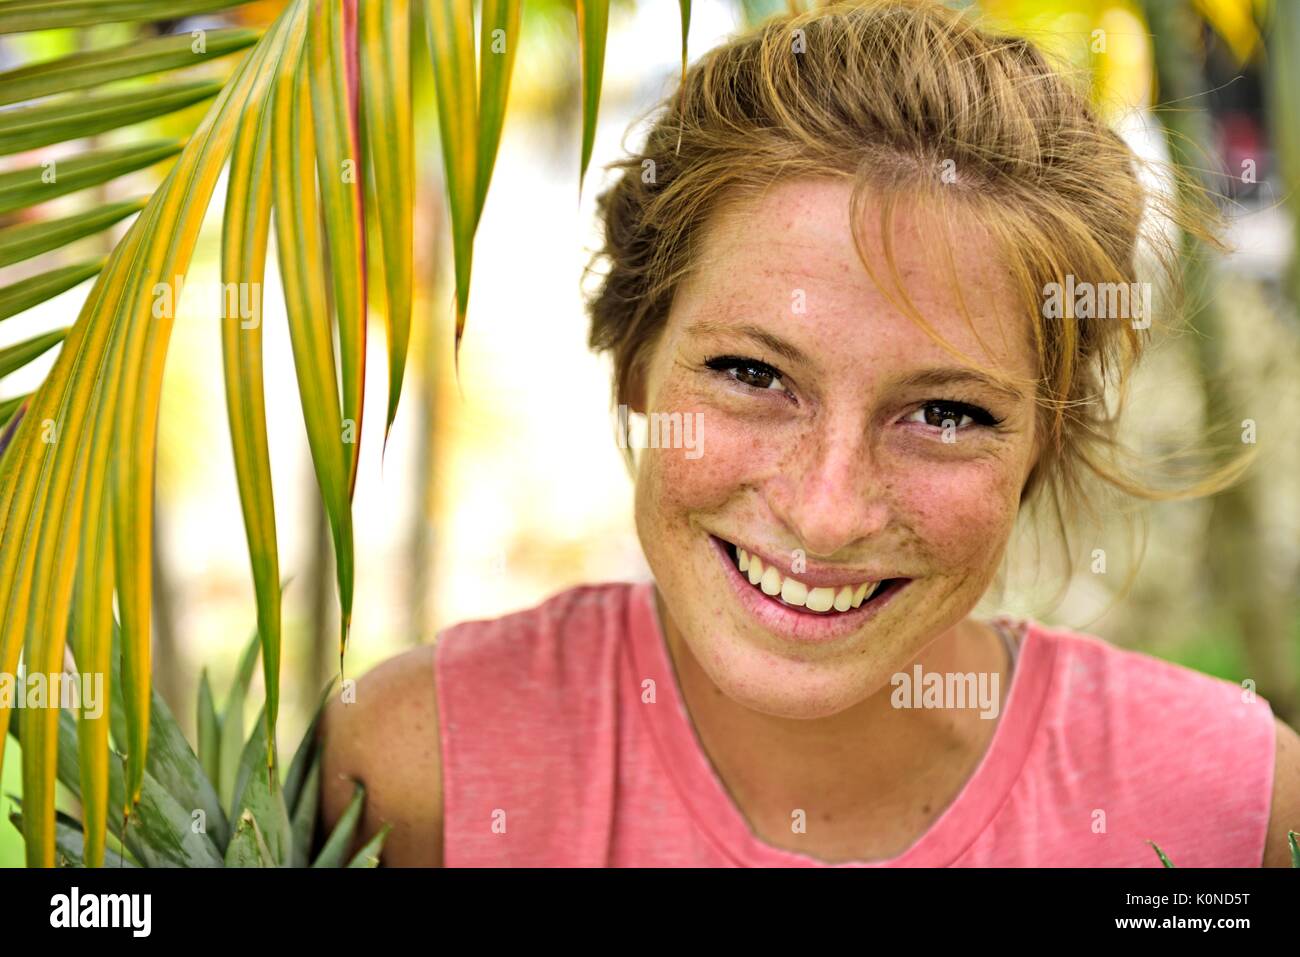 Dominikanische Republik, Portrait von Lachen strawberry blonde junge Frau mit Sommersprossen Stockfoto